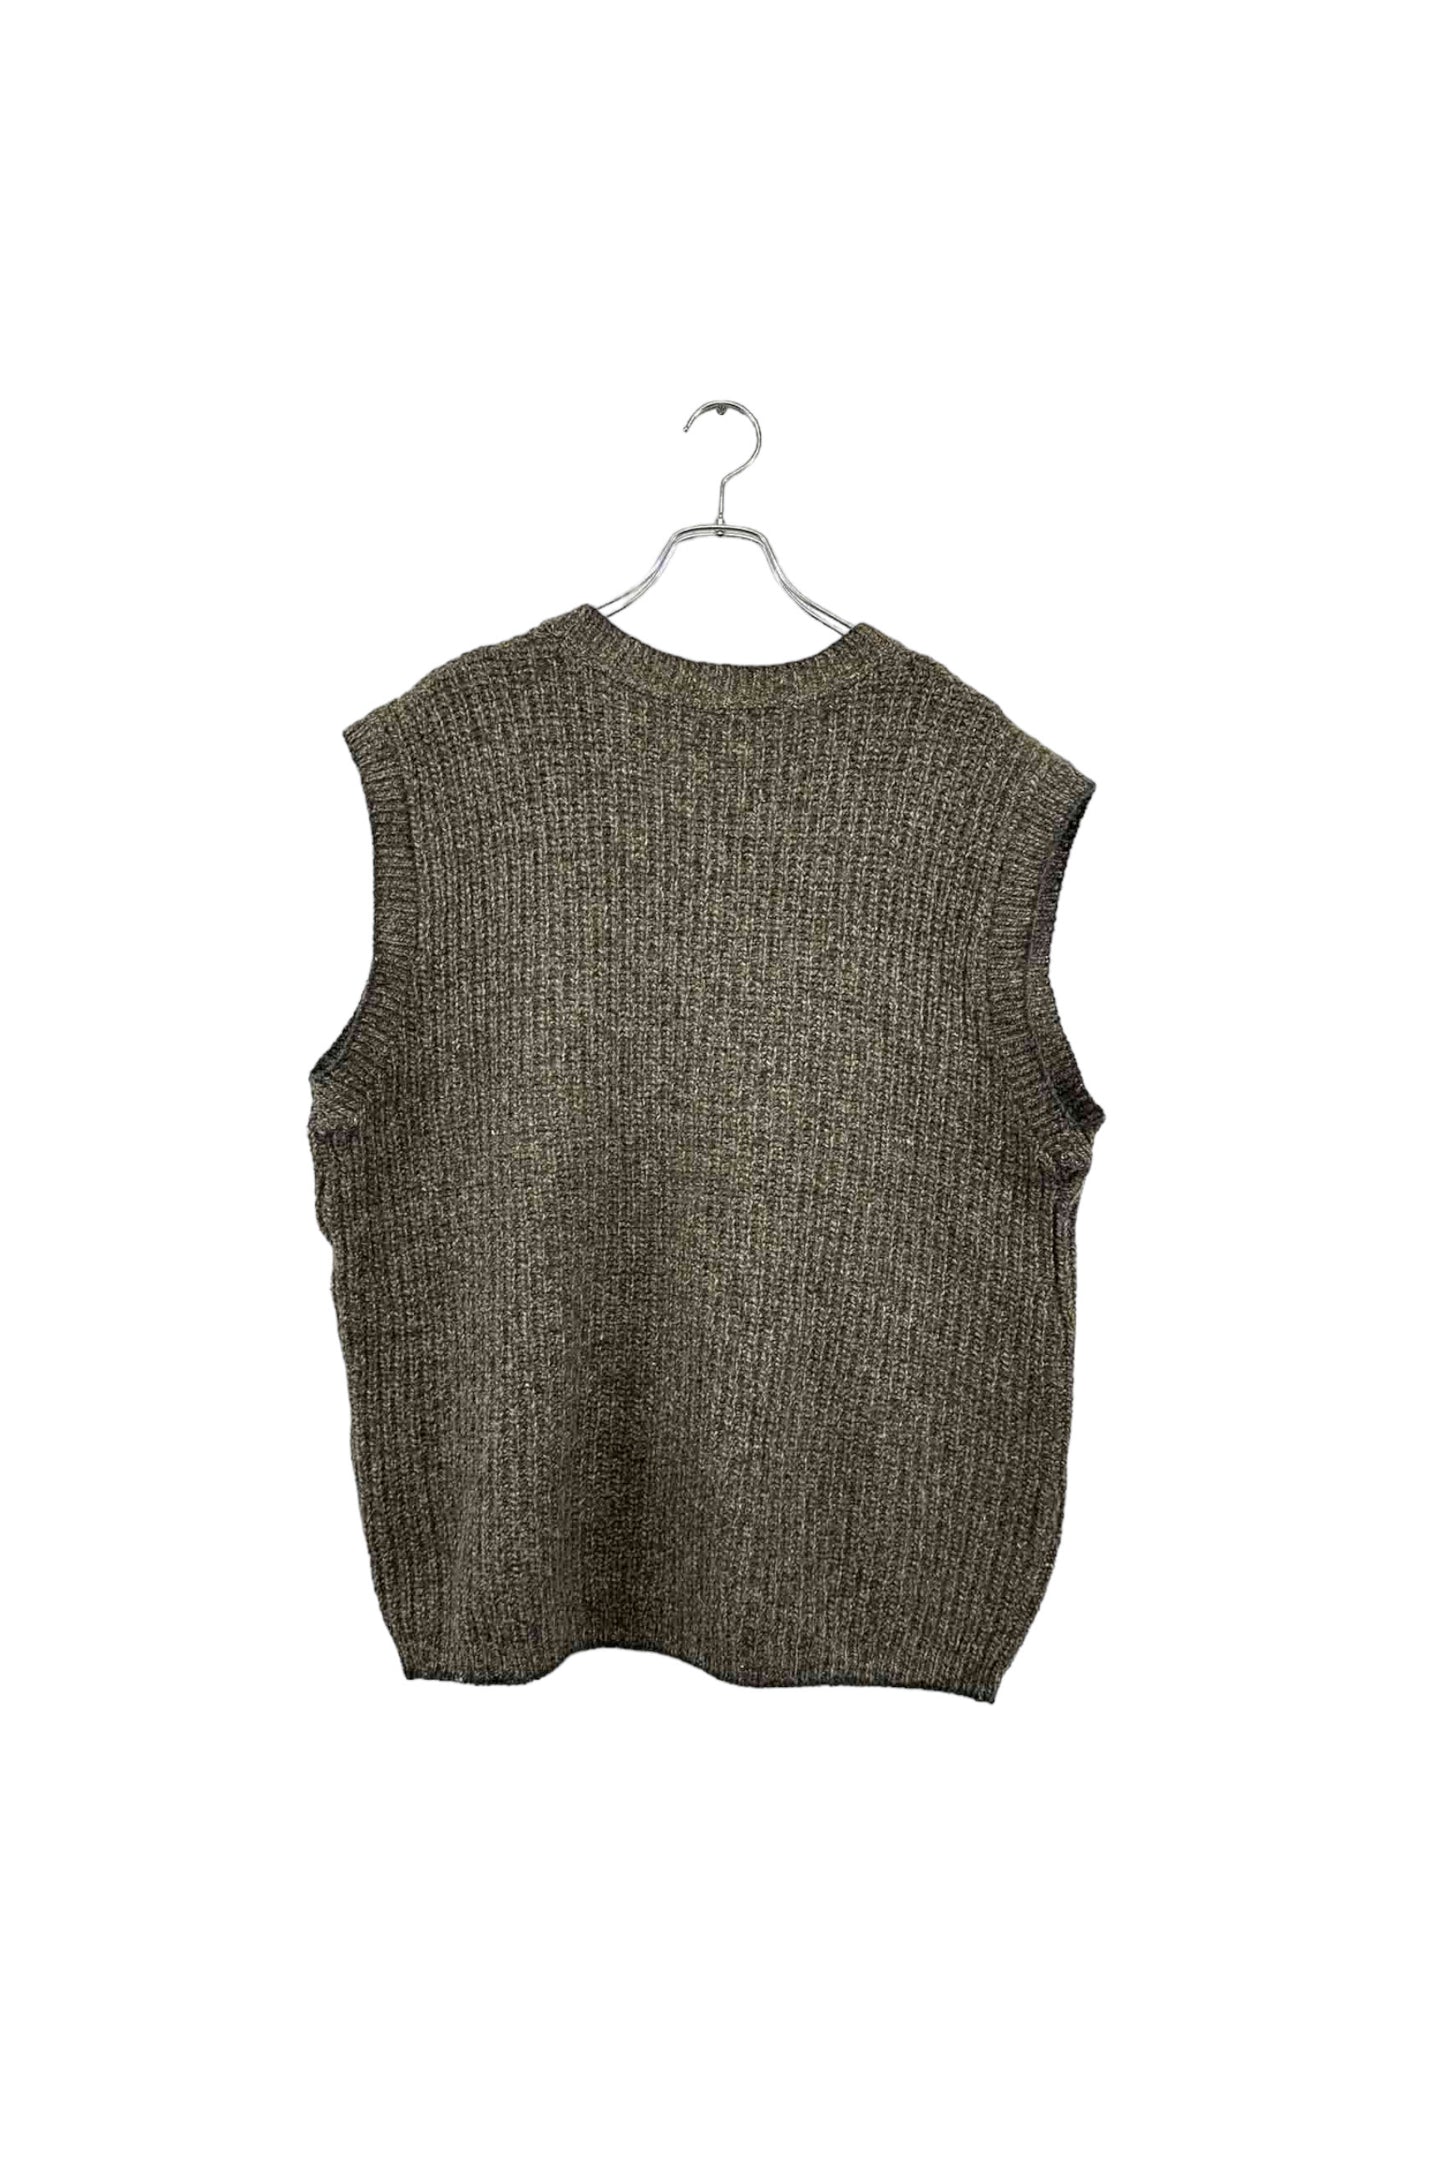 Made in USA Eddie Bauer knit vest